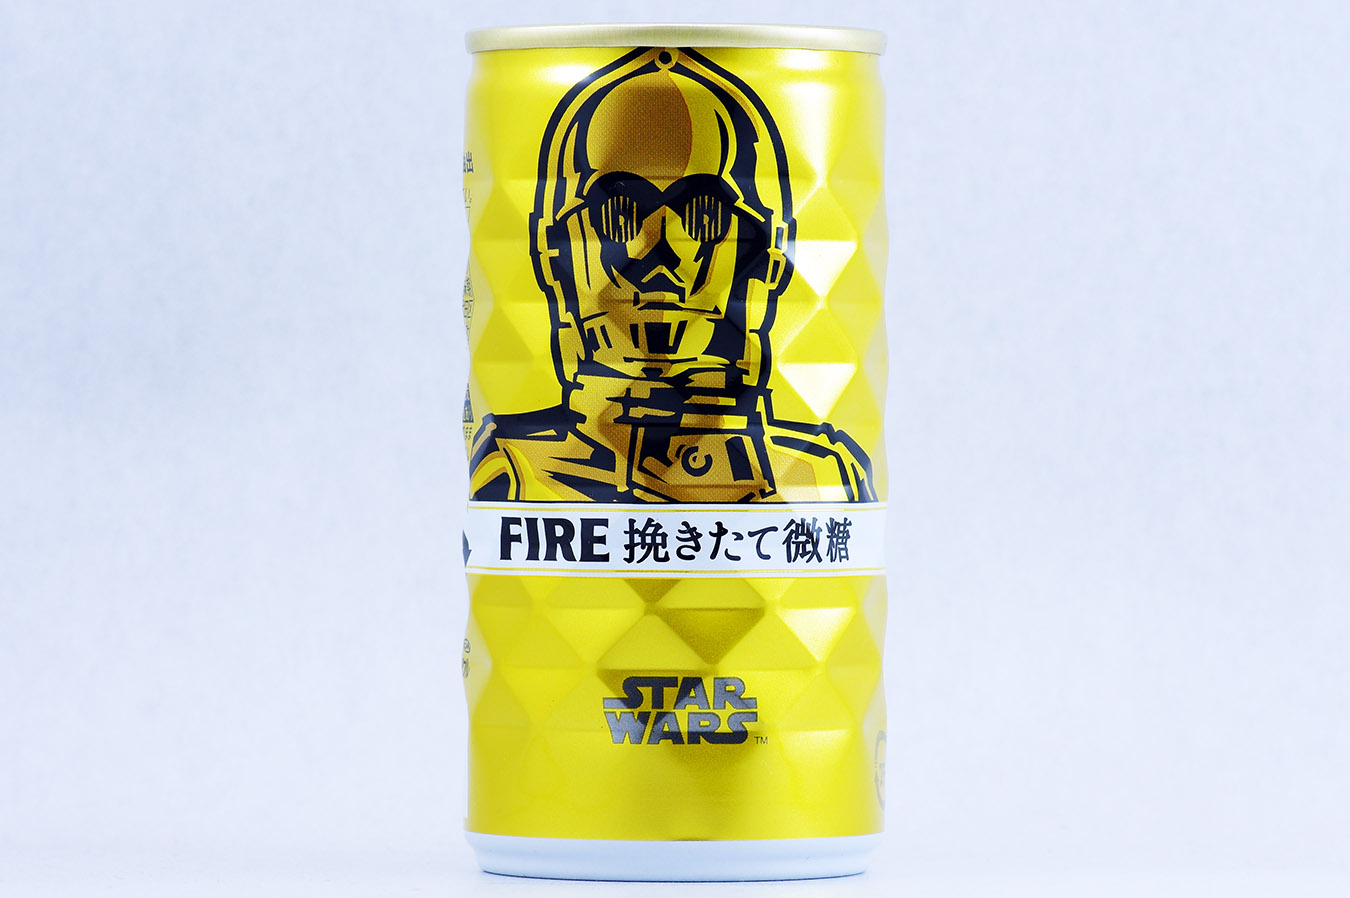 FIRE 挽きたて微糖 「STAR WARS」限定デザイン C-3PO 2015年12月